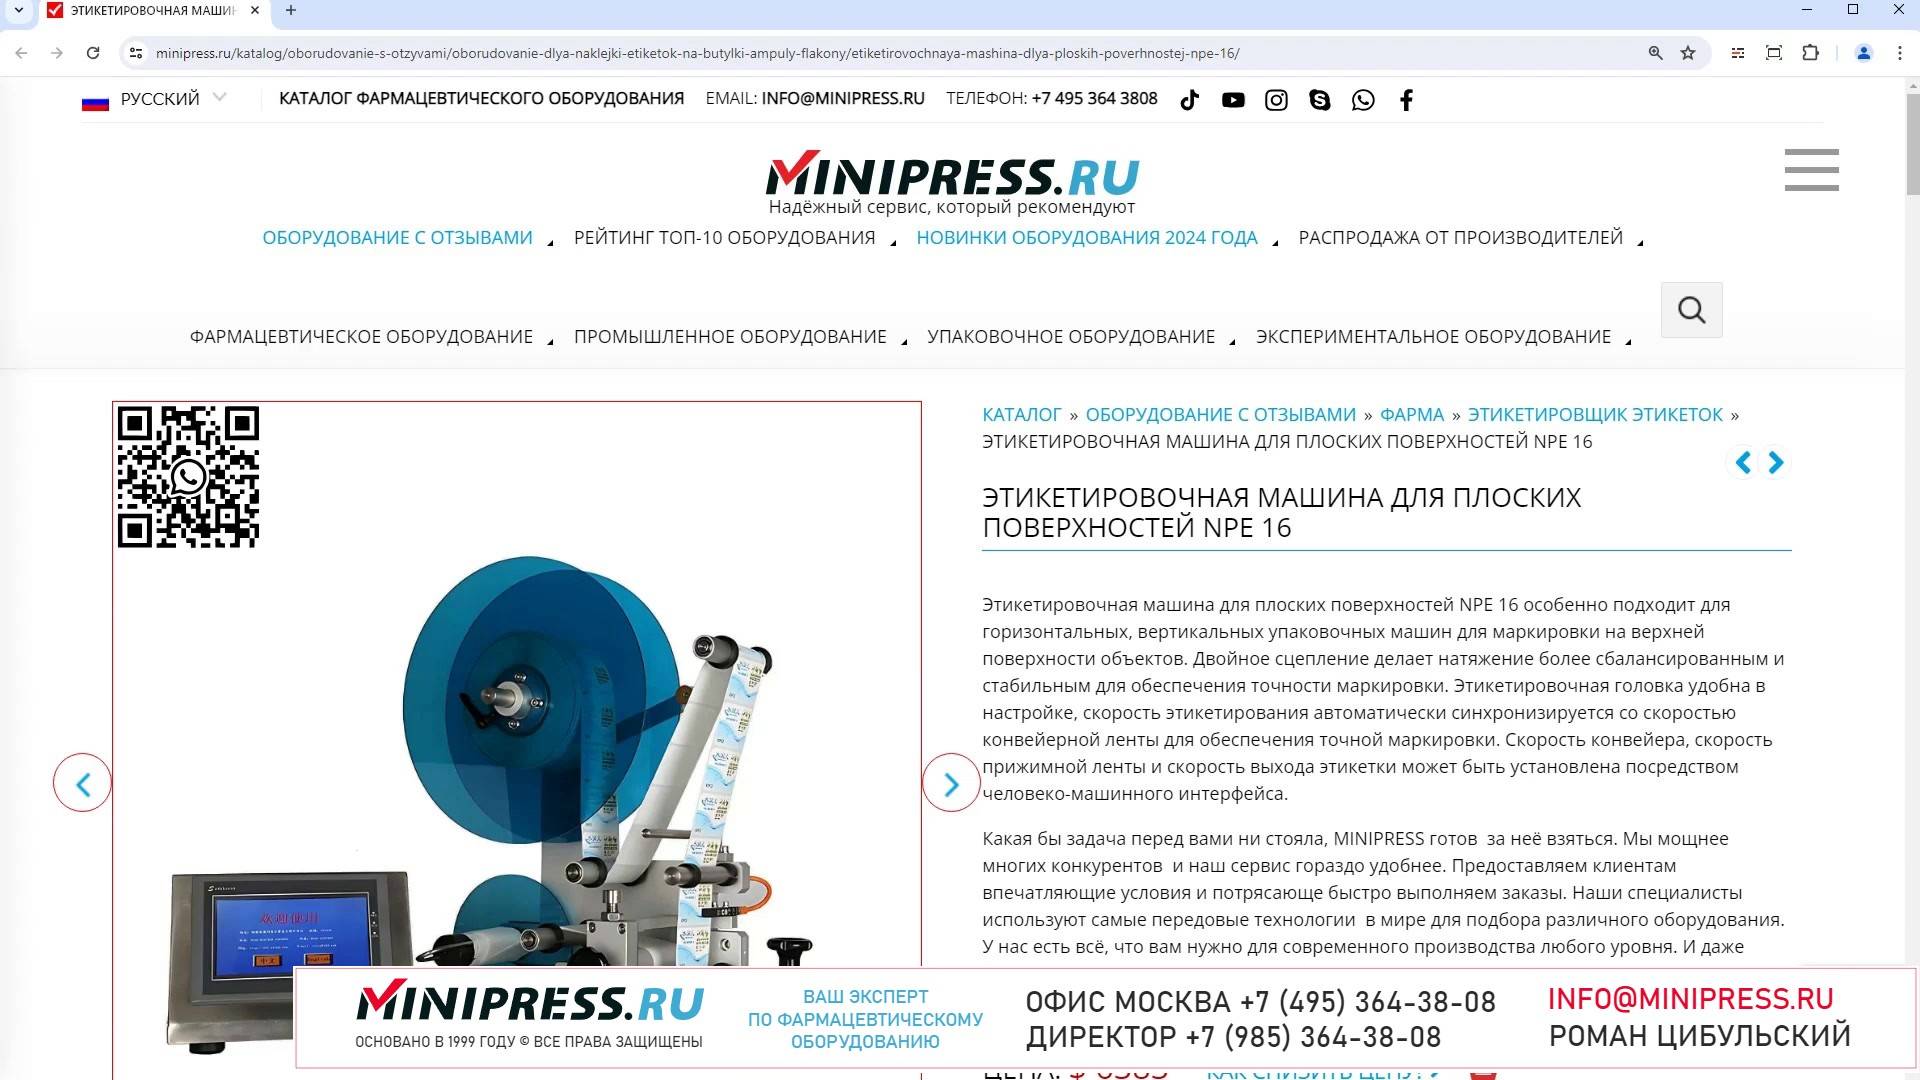 Minipress.ru Этикетировочная машина для плоских поверхностей NPE 16